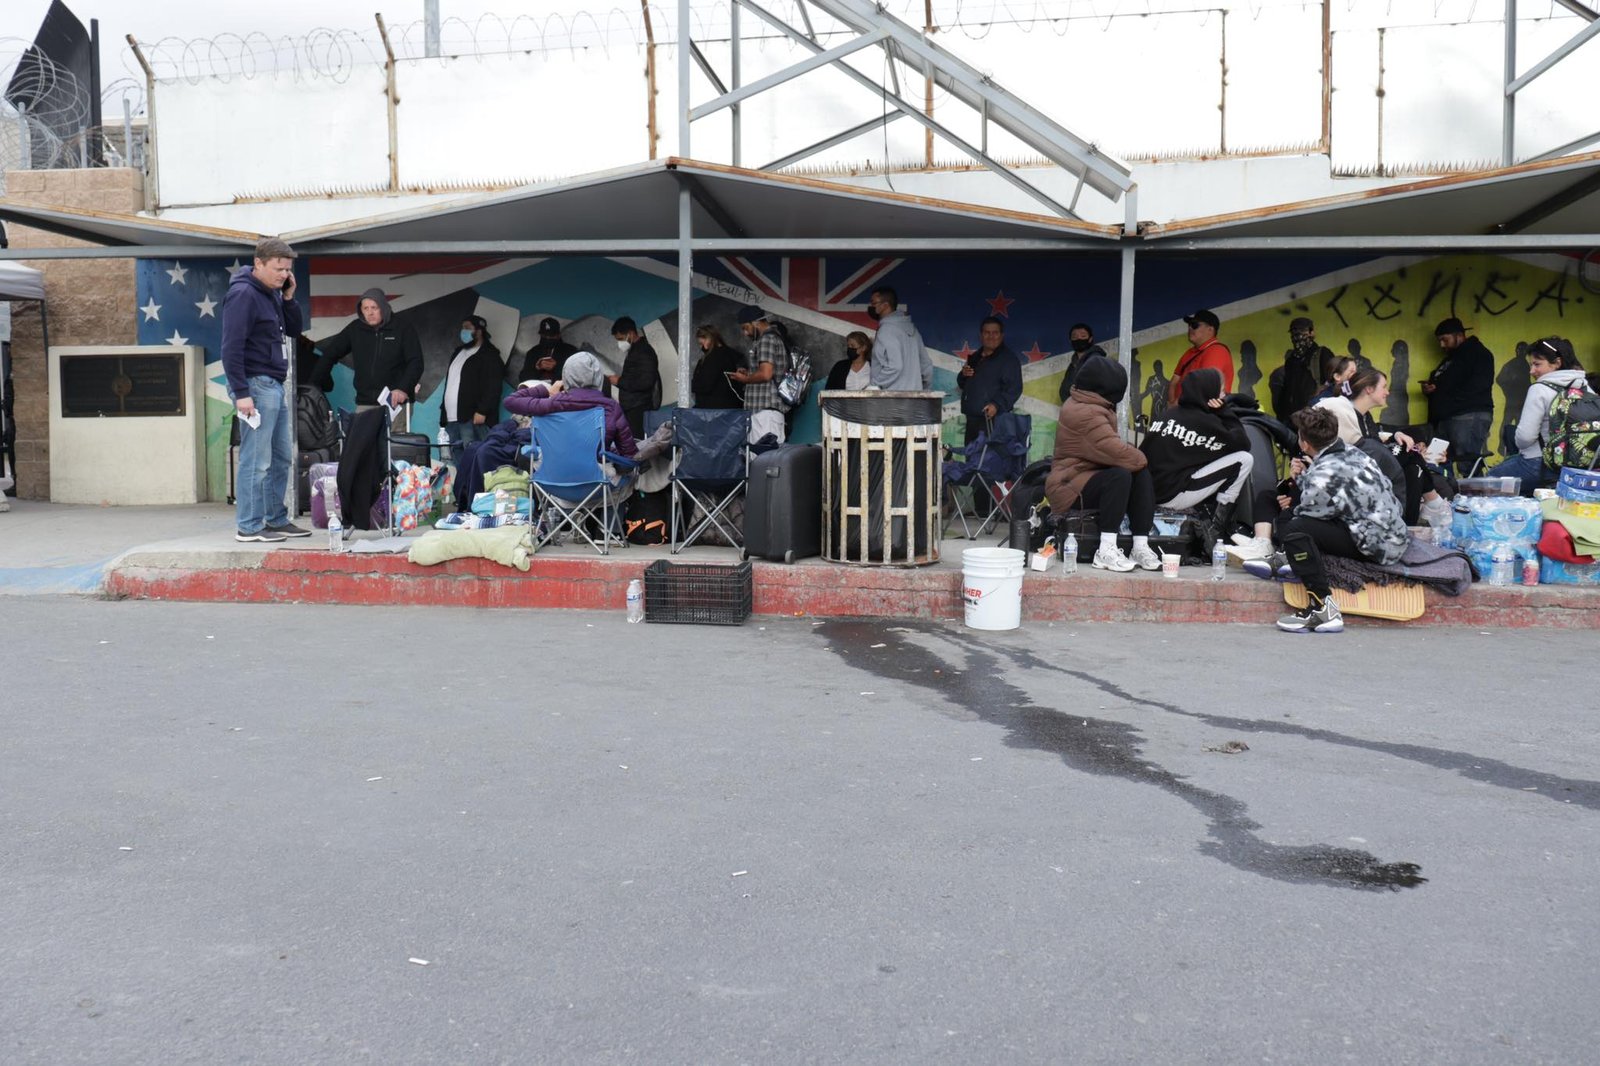 “Ukrainian migrants are already at the Otay Mesa border port in Tijuana.”